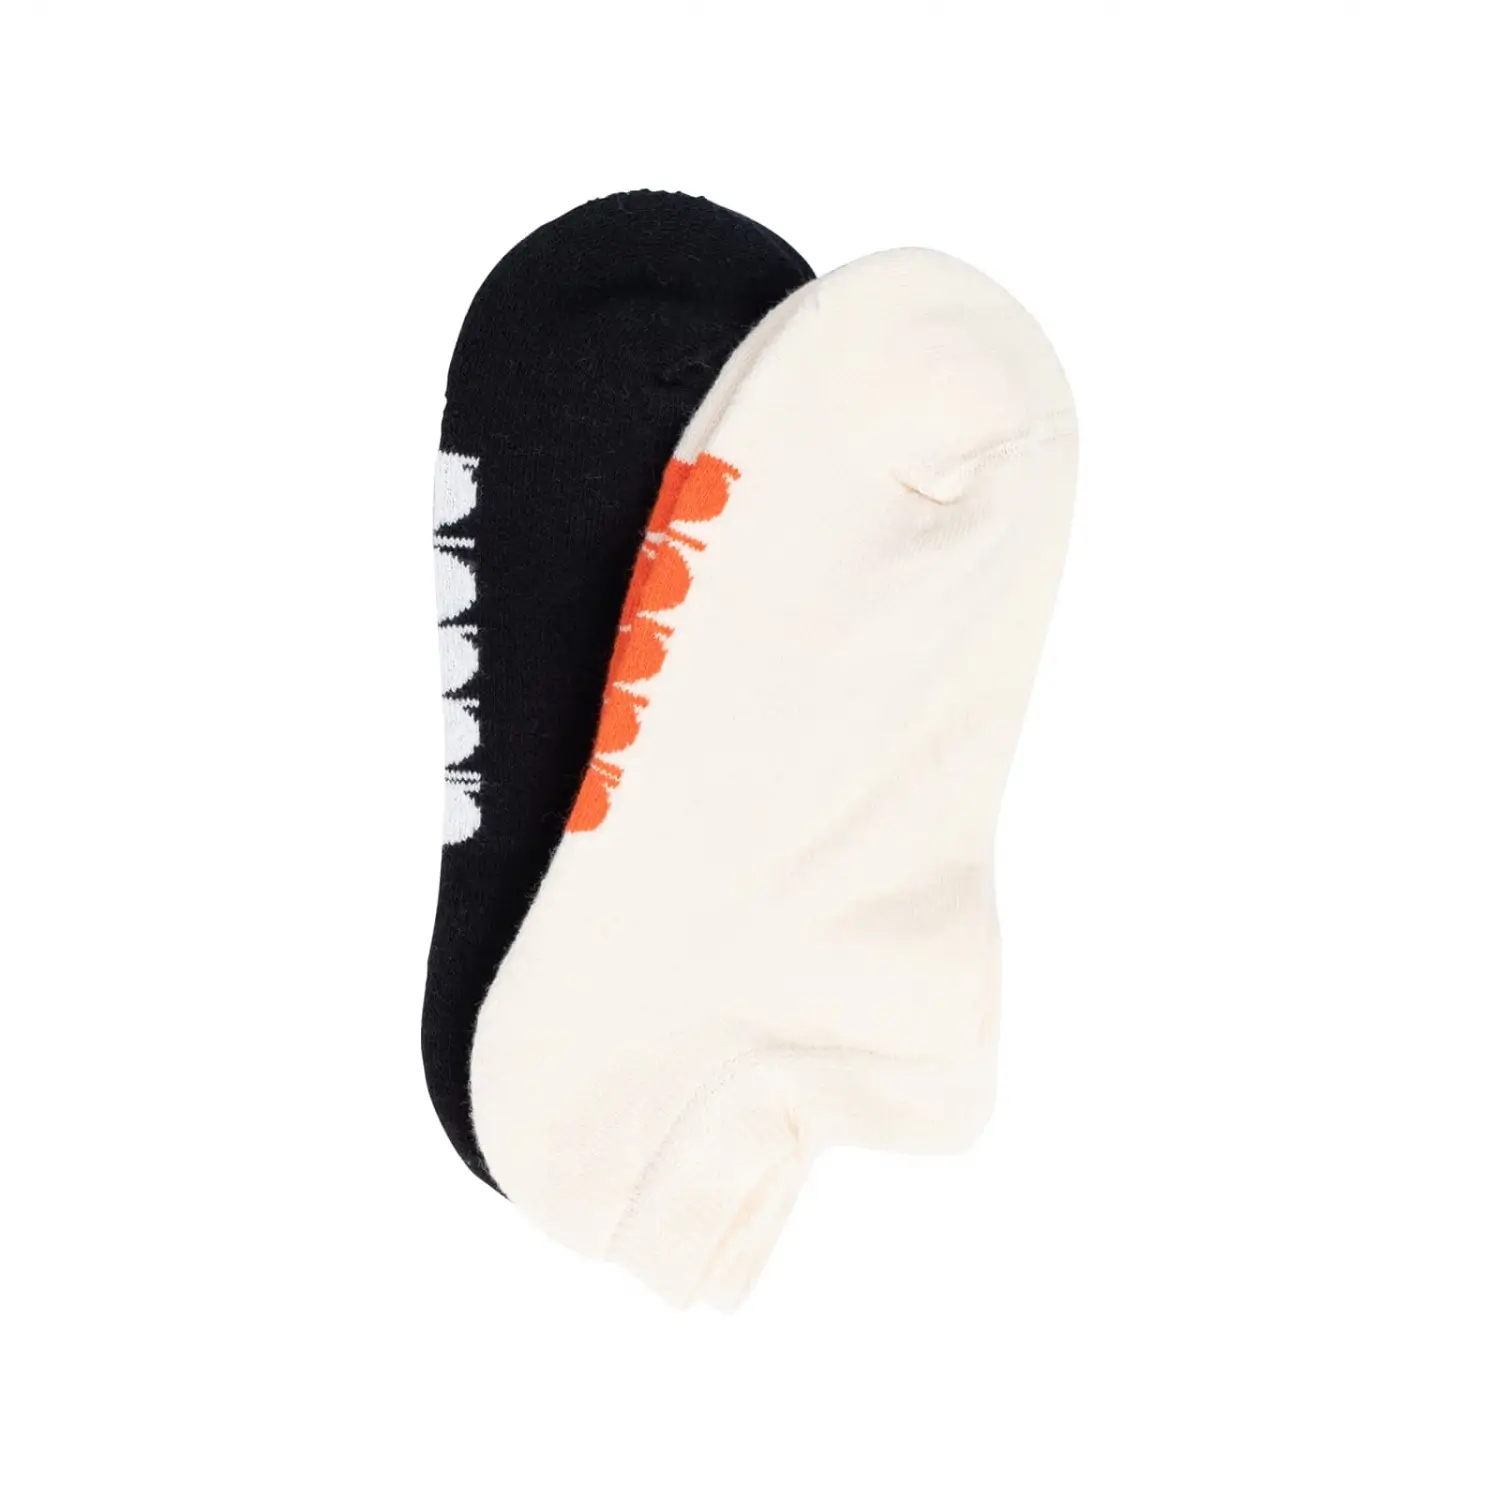 DIADORA  2 pack Ankle Socks W Krem Renk Siyah Kadın 2li Çorap - D202015-976